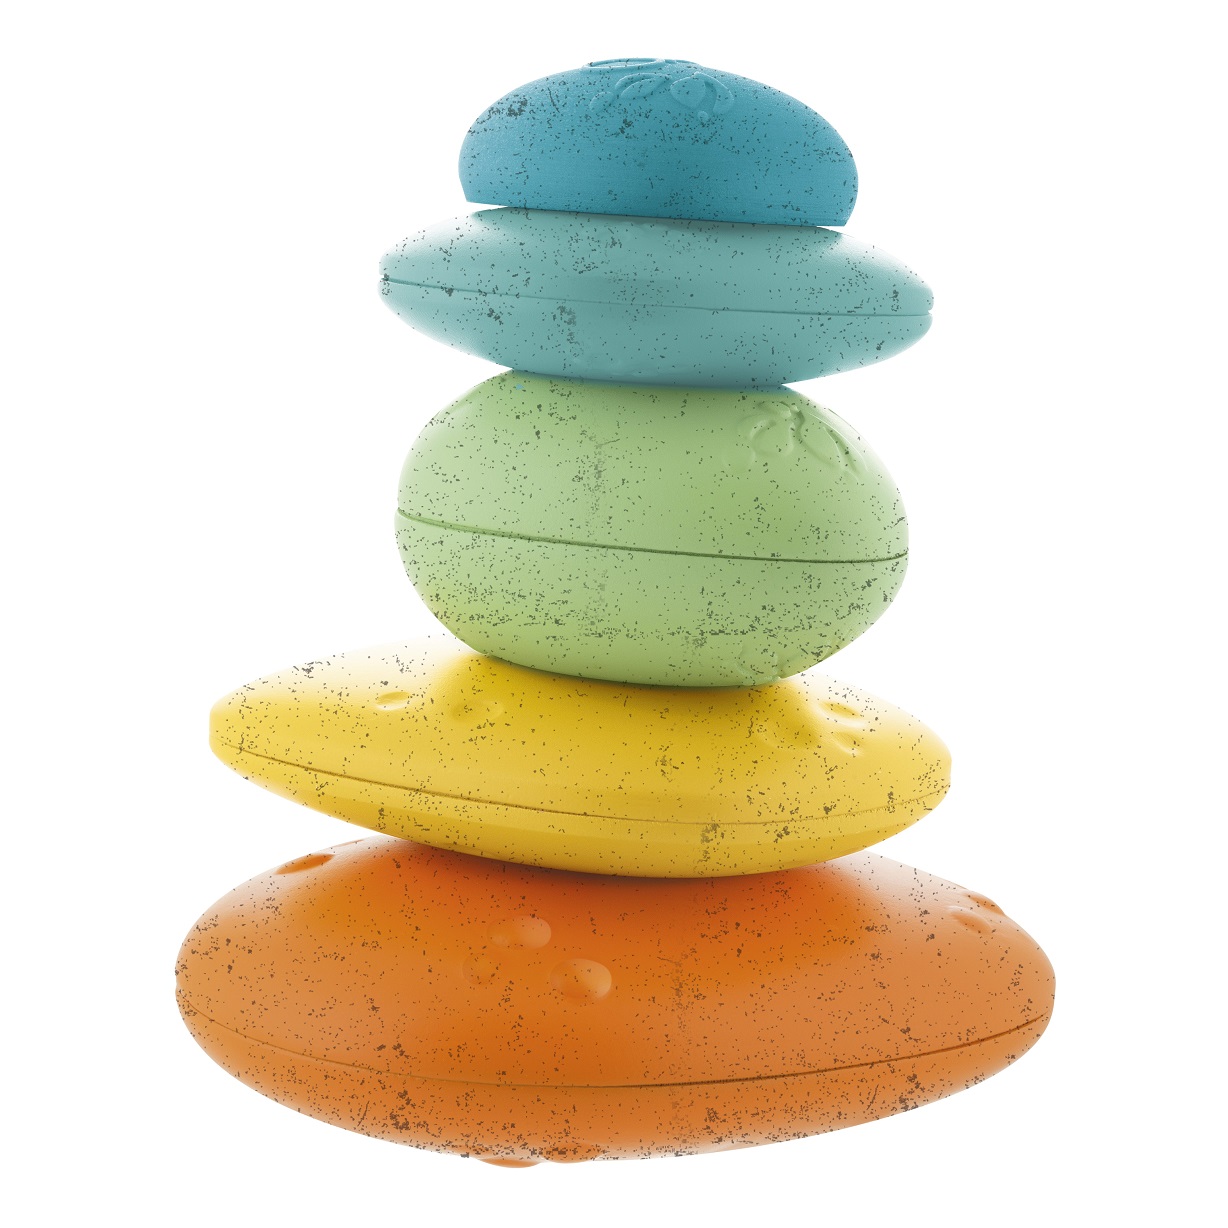 zabawka chicco w kształcie kolorowych kamieni